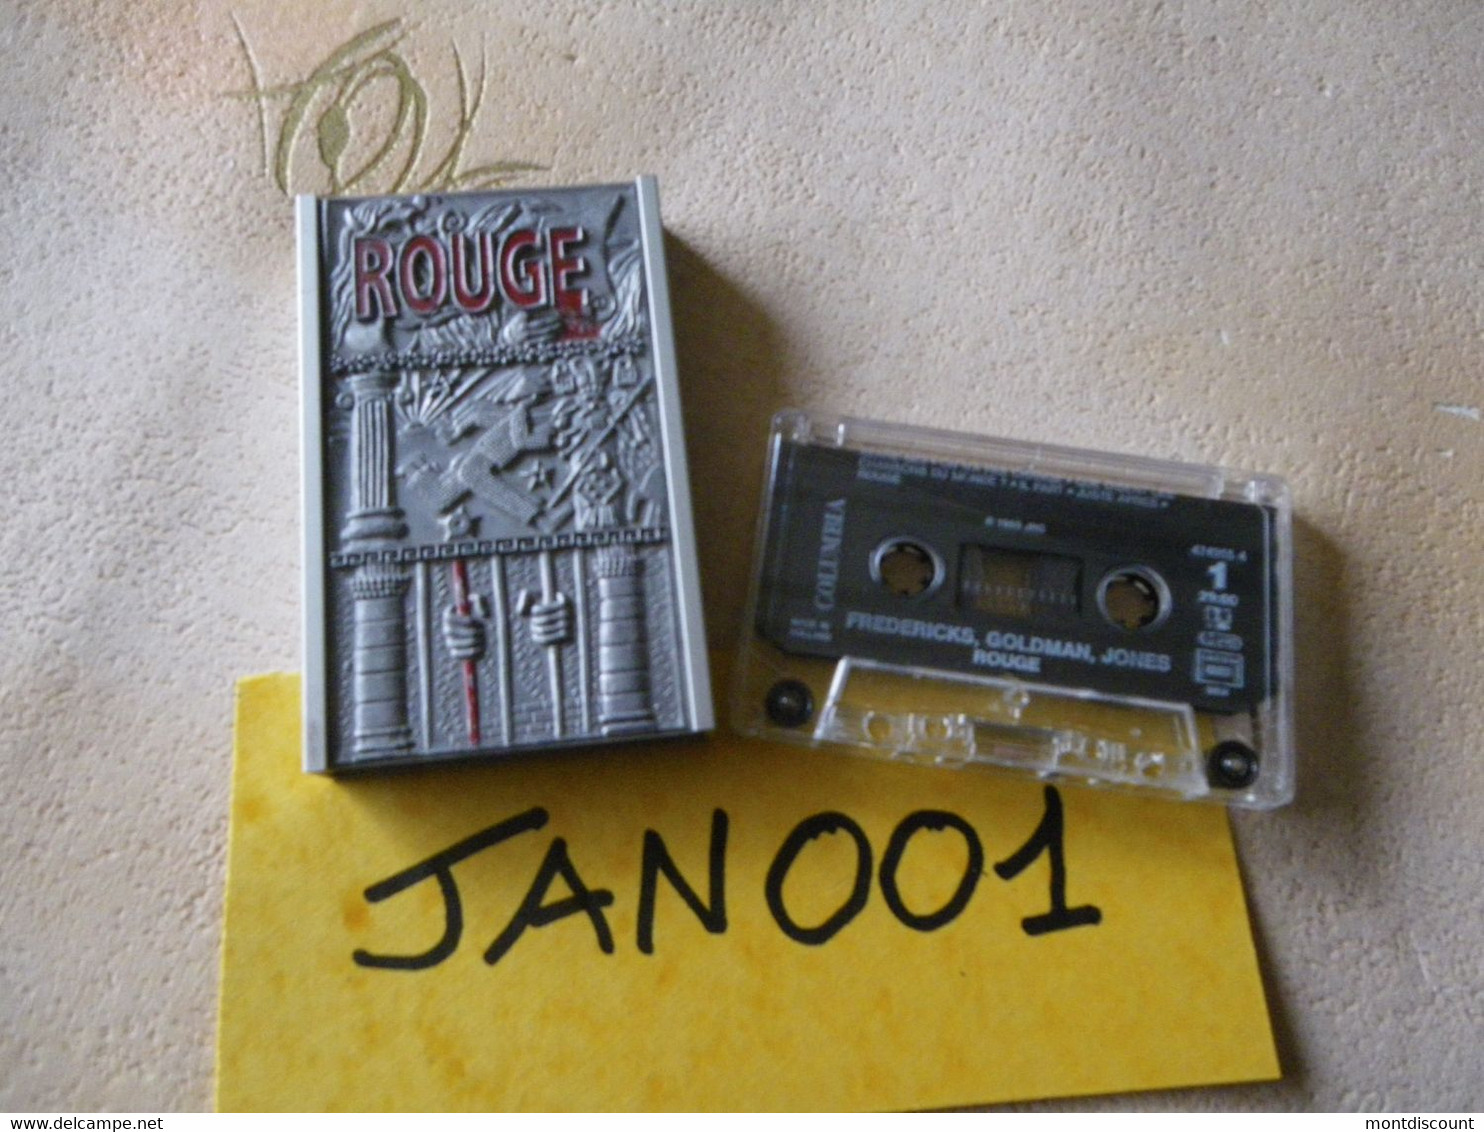 JEAN-JACQUES GOLDMAN K7 AUDIO... VOIR PHOTO...ET REGARDEZ LES AUTRES (PLUSIEURS) (JAN 001) - Audiokassetten